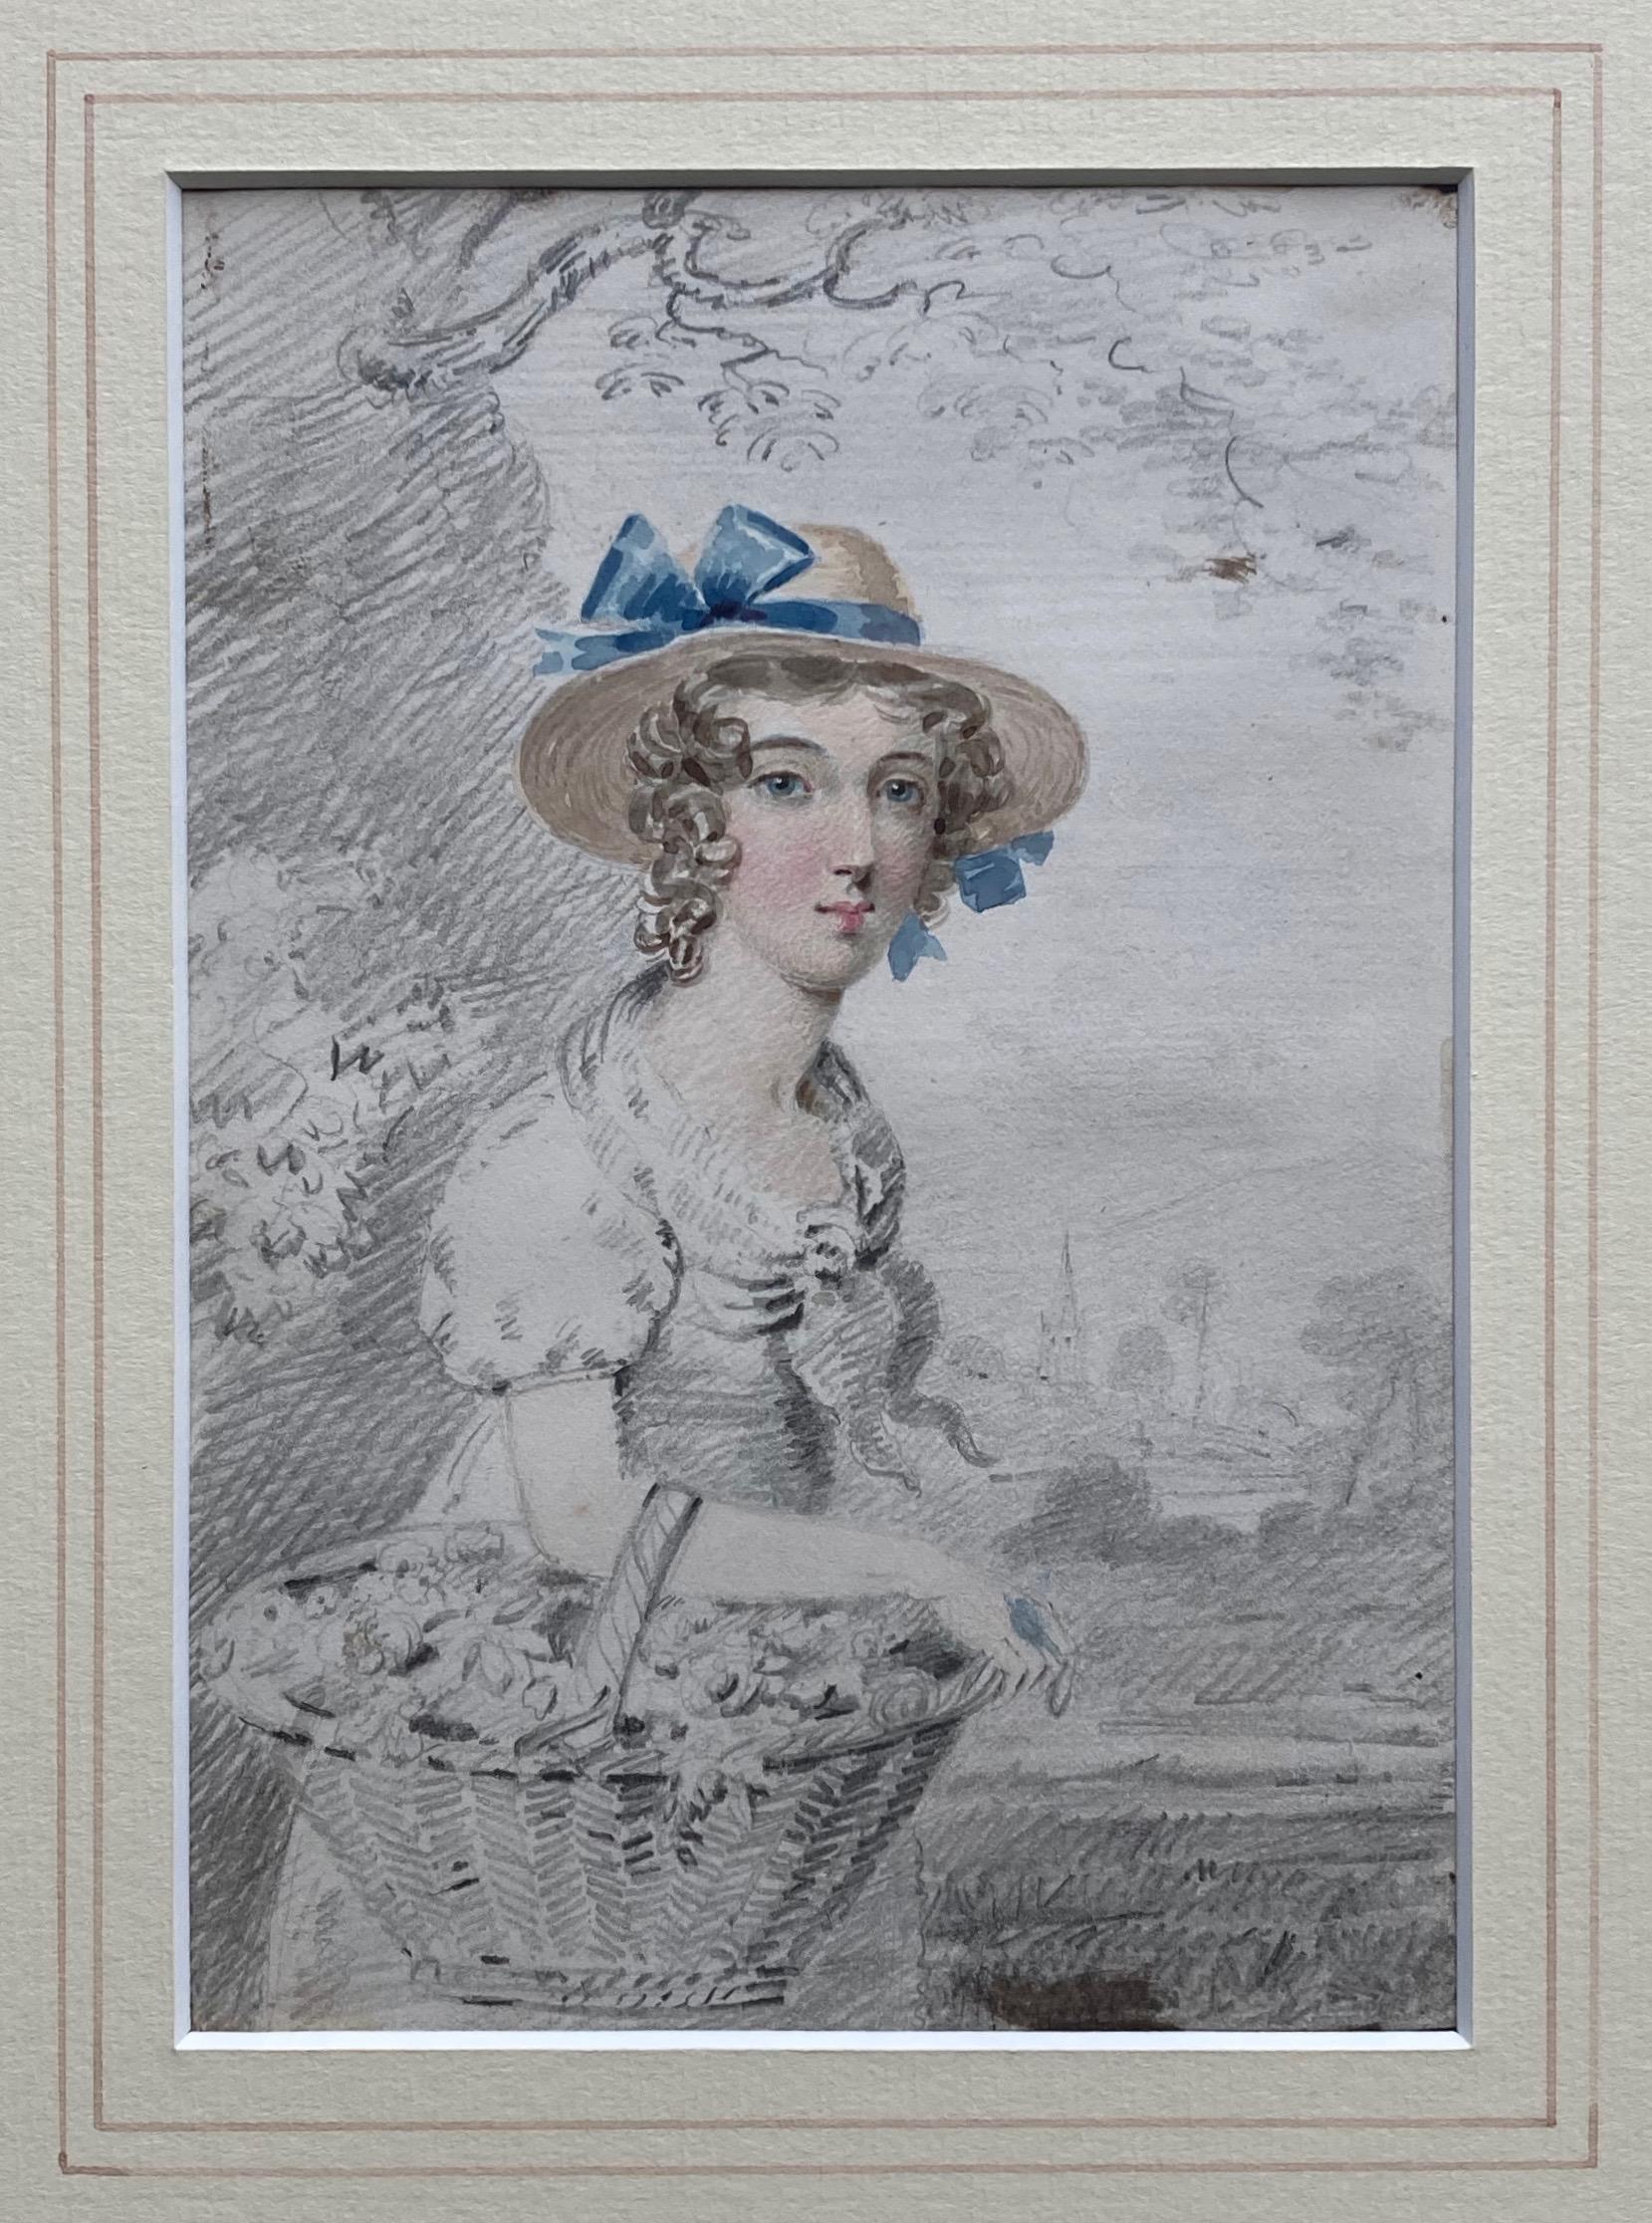 Ein wirklich charmantes Porträt eines jungen Mädchens aus dem frühen 19. Jahrhundert, das einen Korb mit Blumen trägt. Das Gesicht ist wunderschön gemalt, mit leicht erröteten Wangen und auffälligen blauen Farbtupfern an der Schleife ihres